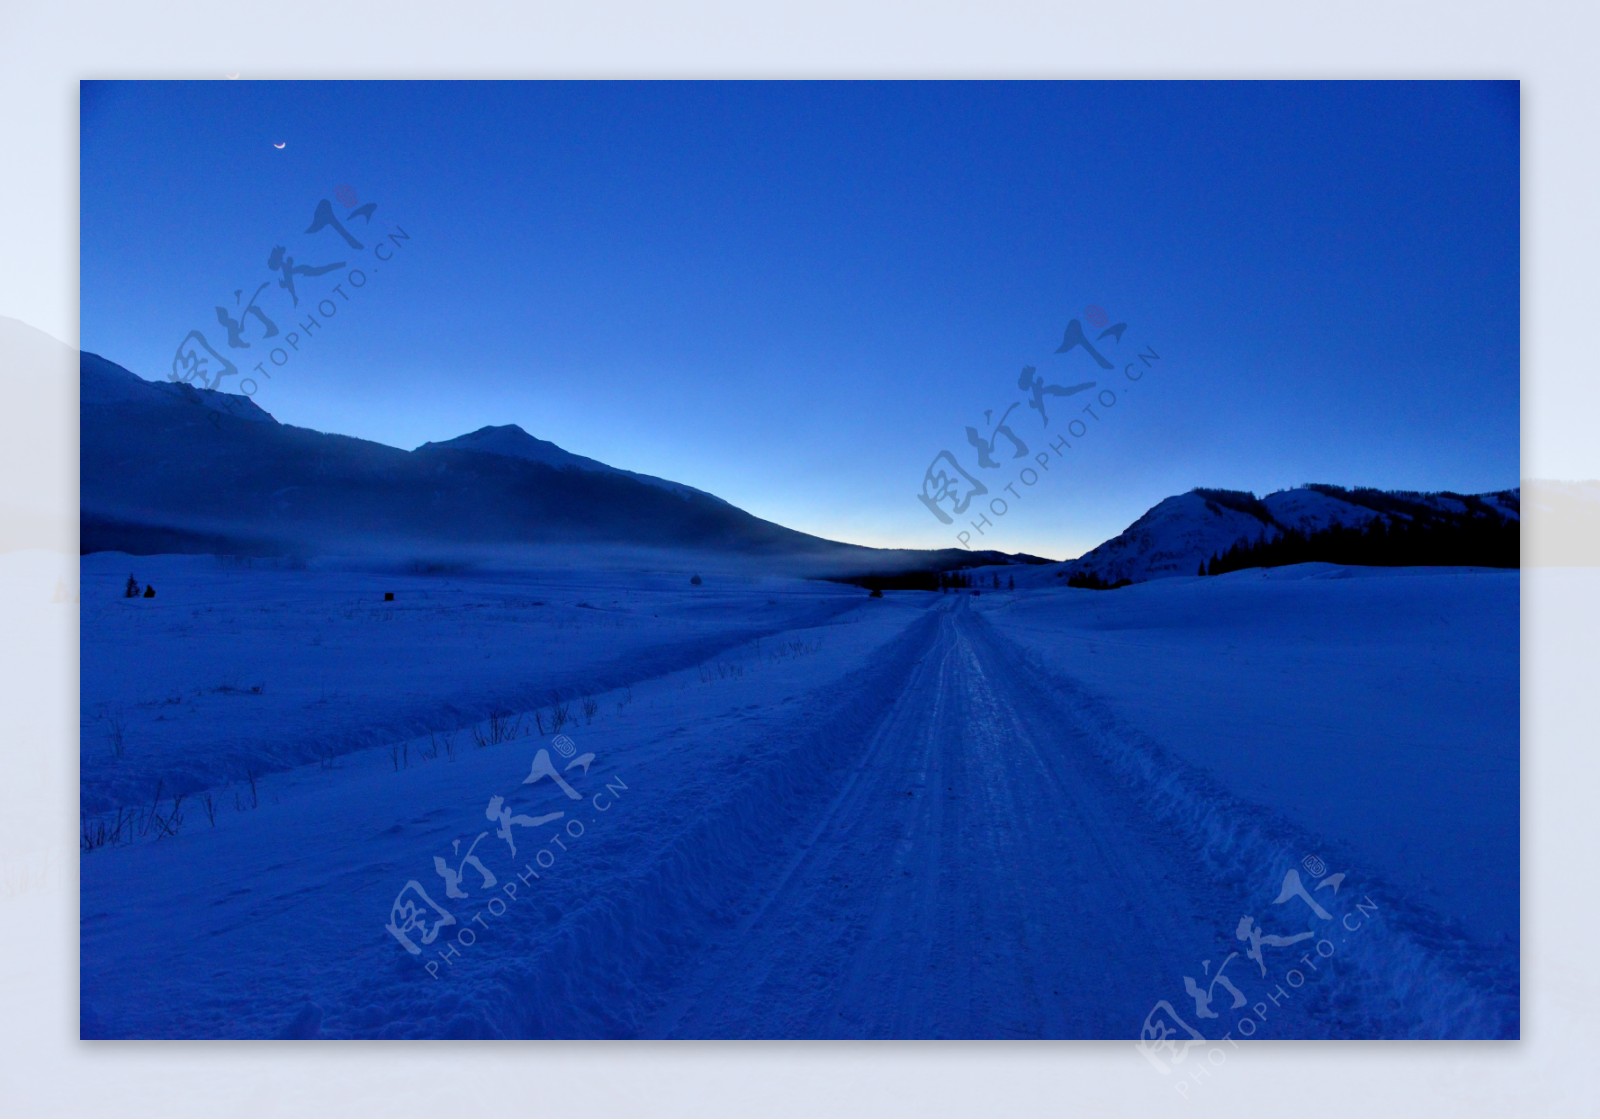 冬季北疆风景